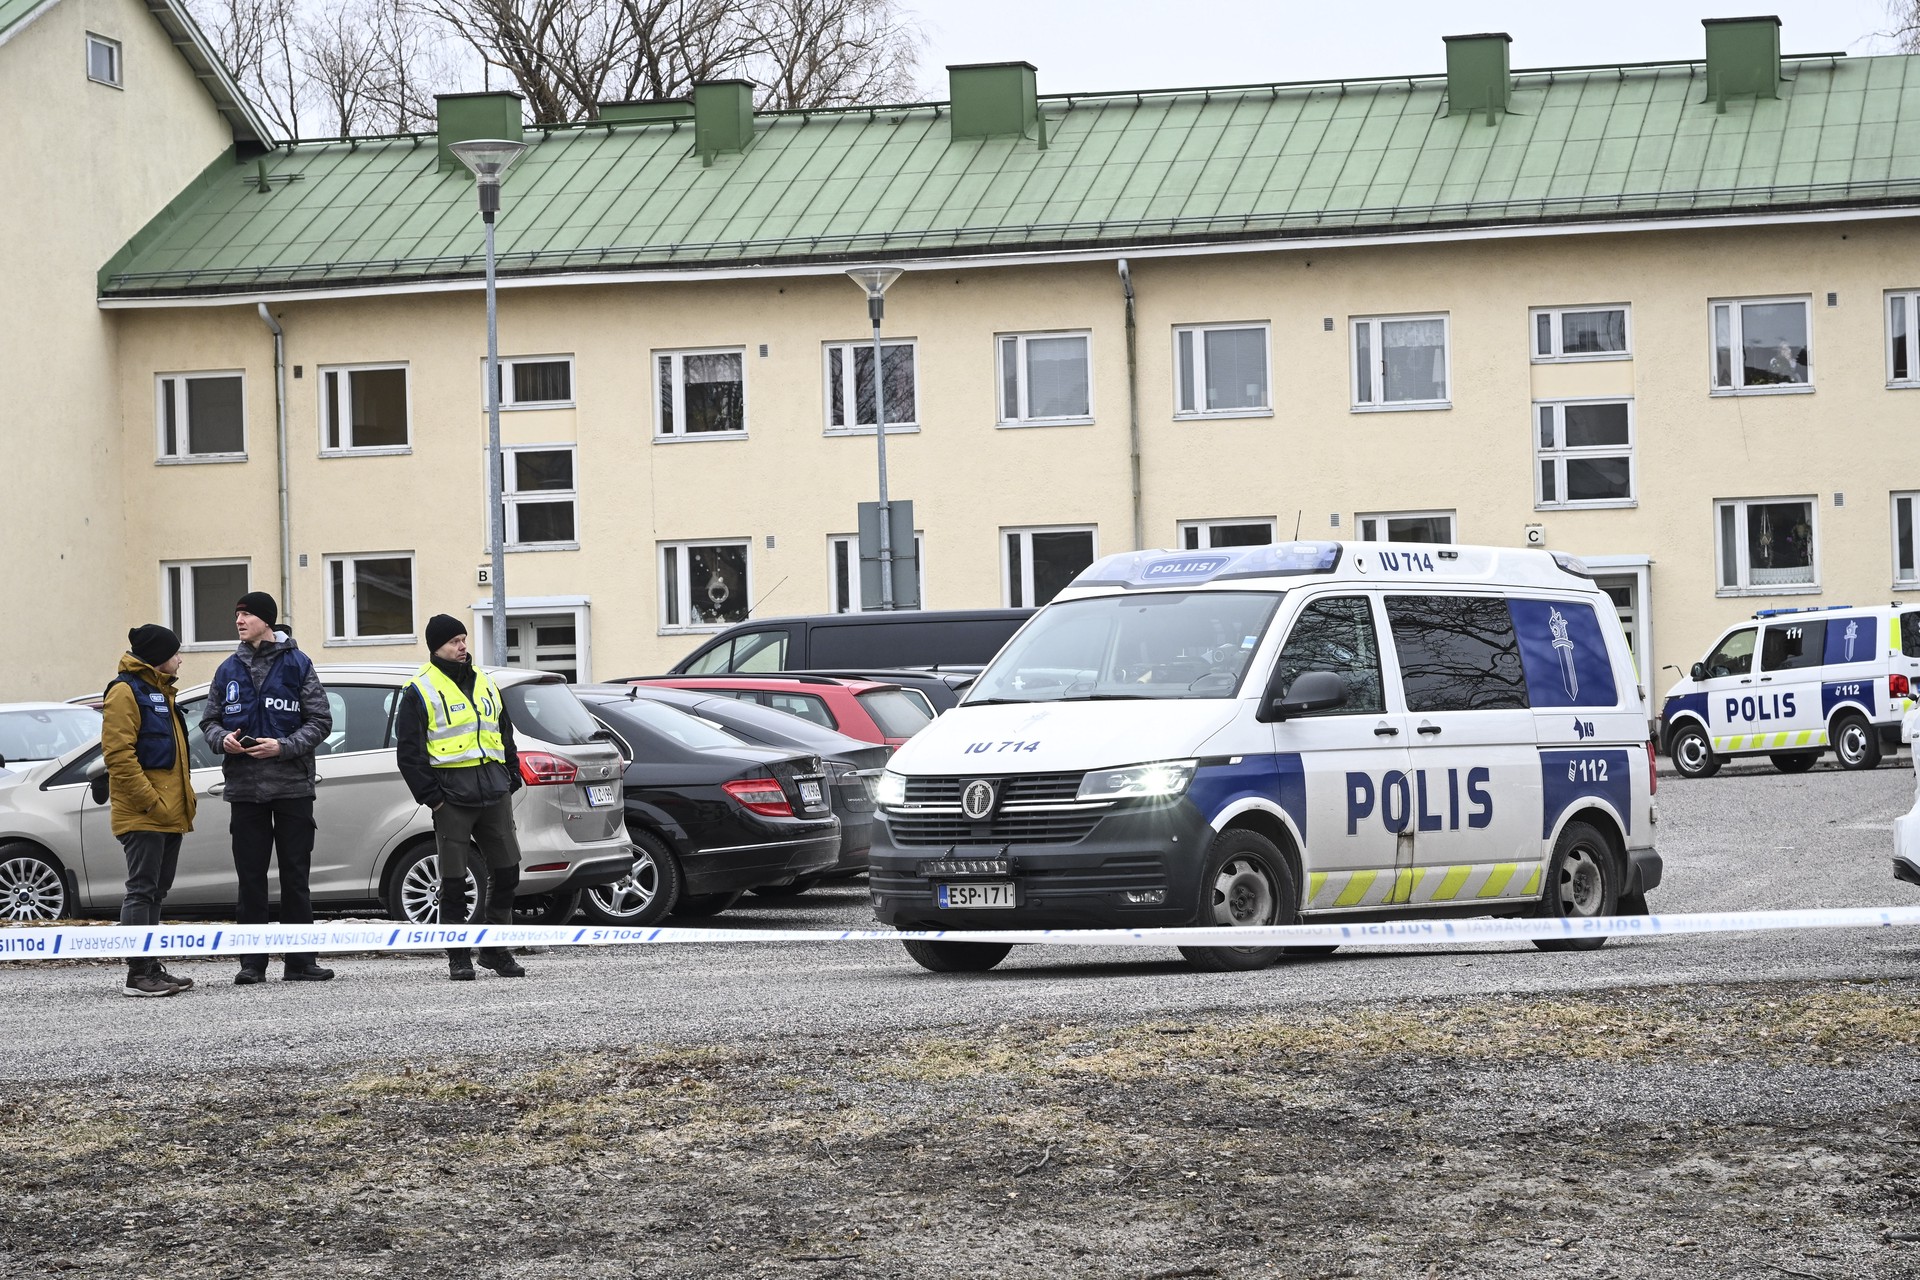 Подросток, устроивший стрельбу в финской школе, был жертвой издевательств